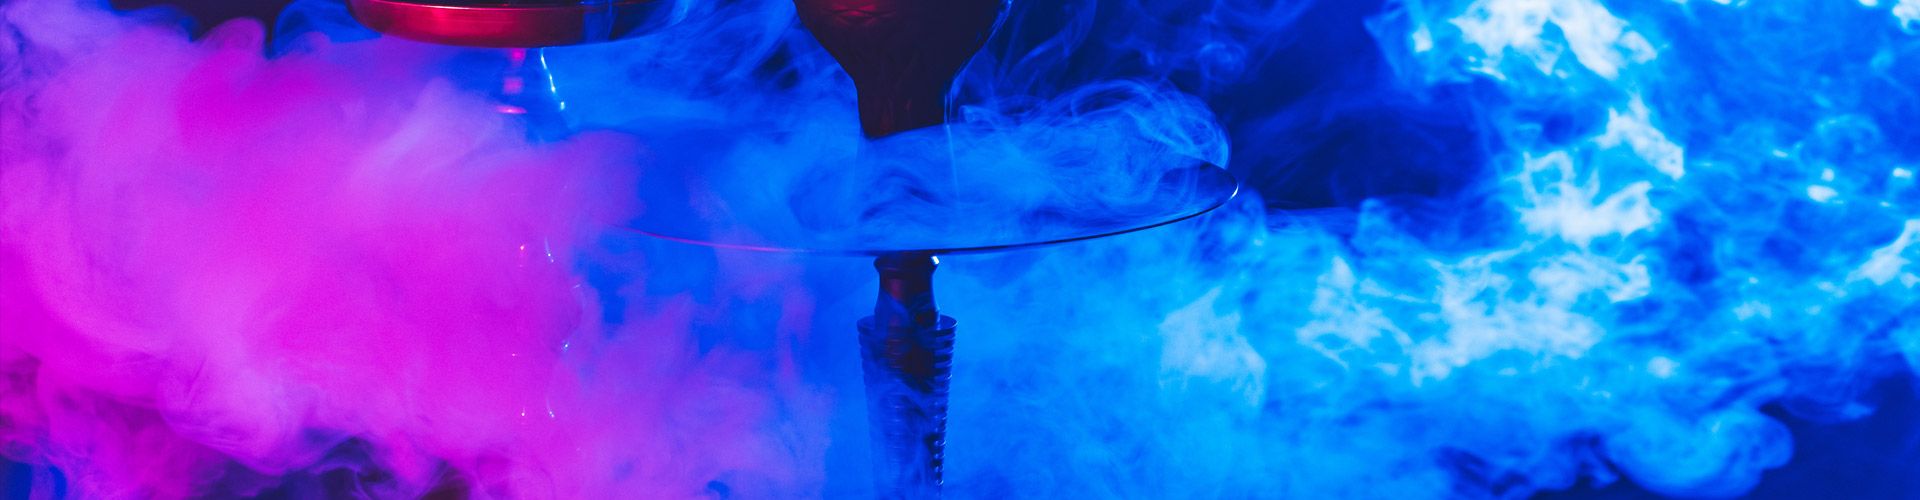 Macchine effetto fumo artificiale per eventi, discoteche e concerti